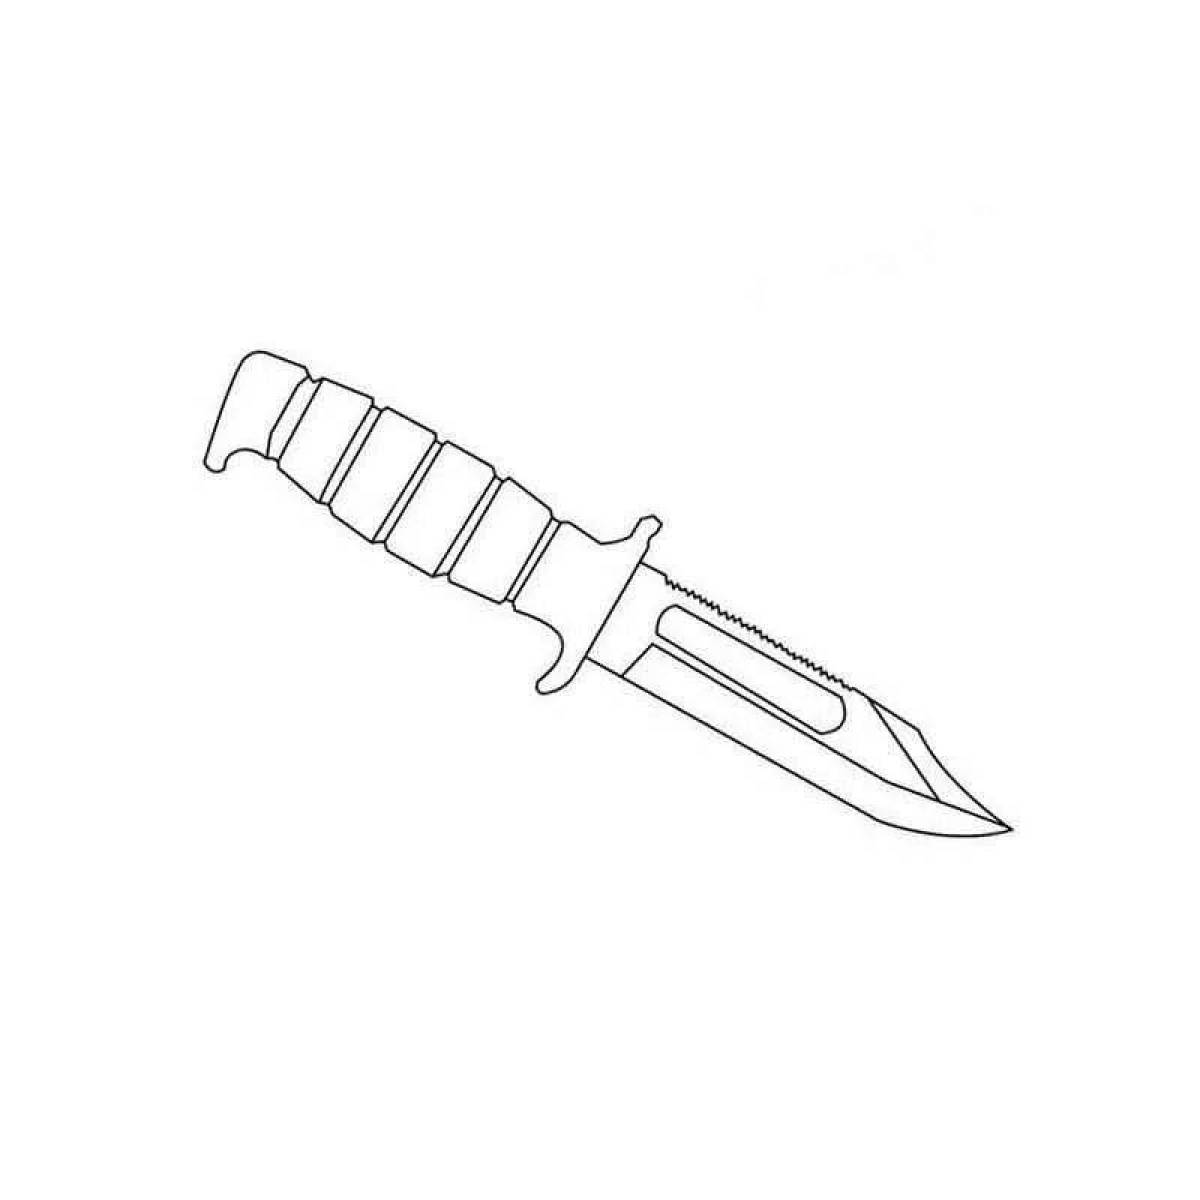 Ножи из standoff рисунок. M9 ножи в СТЕНДОФФ. М9 нож стандофф 2 чертеж. Черчож м9 из стандофф2. М 9 байонет нож стандофф 2.